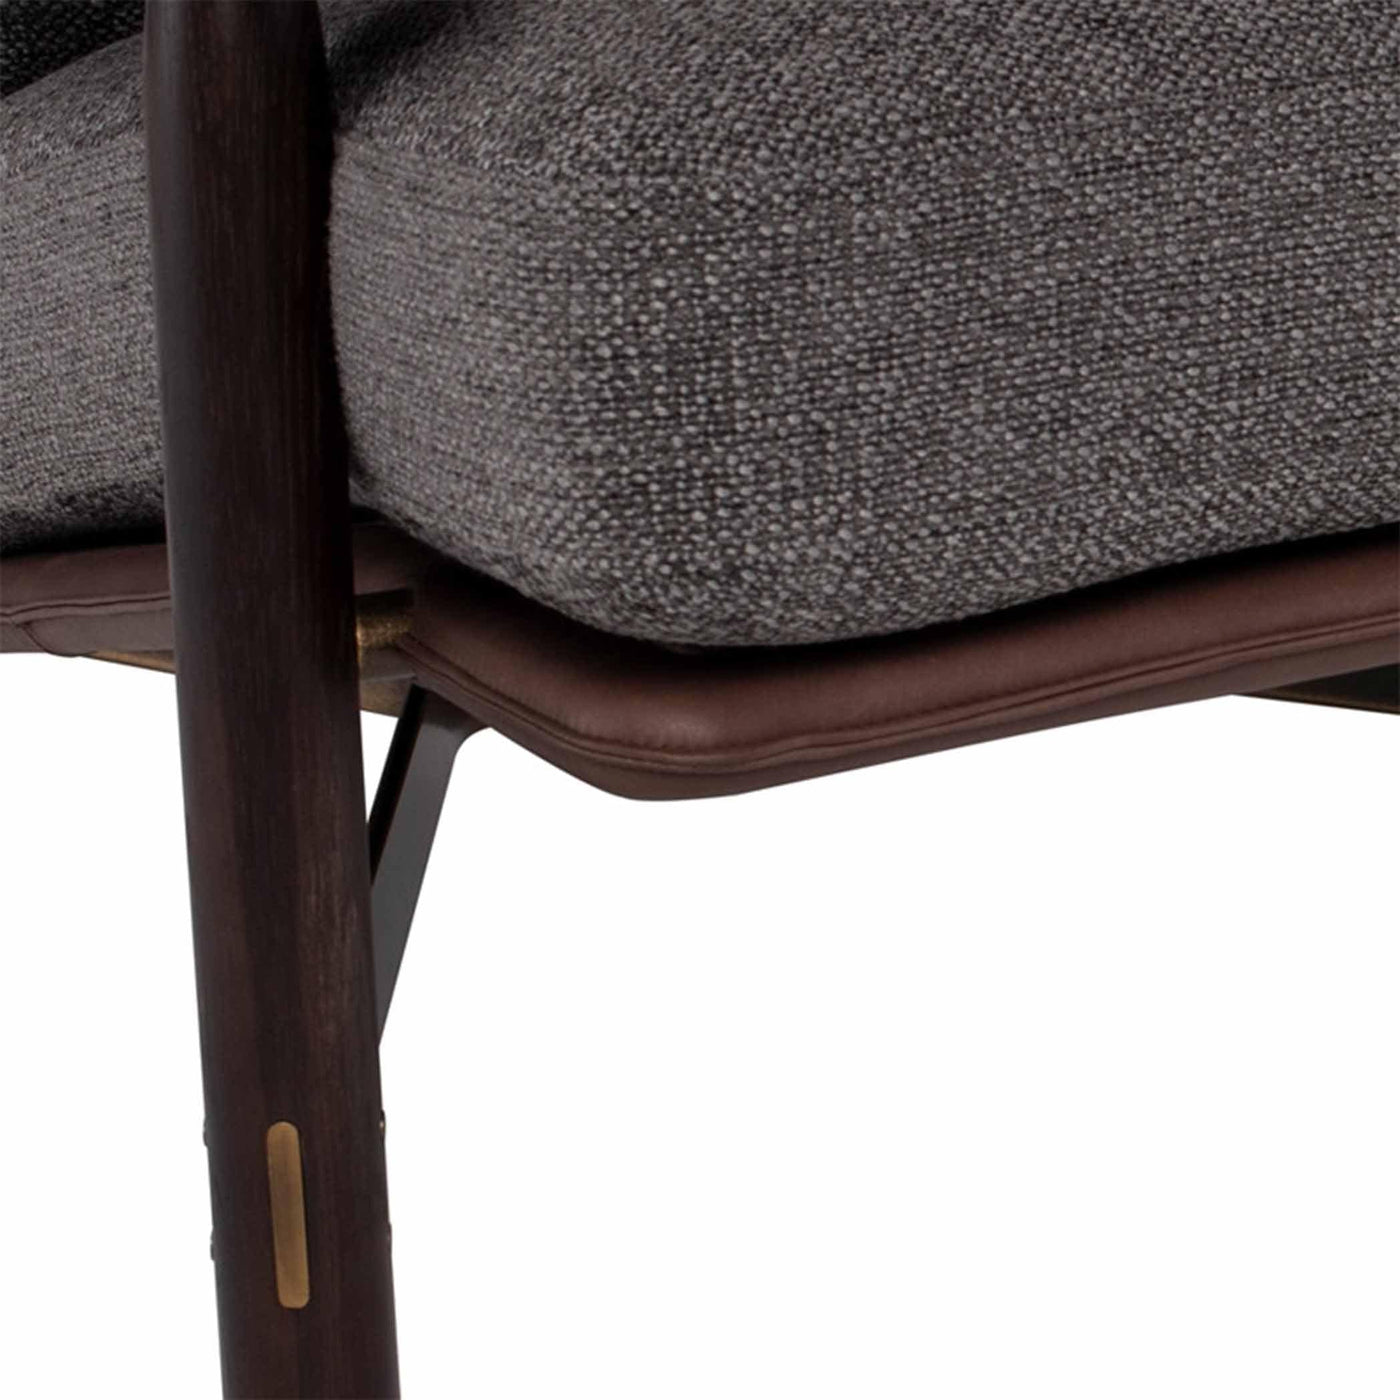 Découvrez le confort et l'élégance du fauteuil Stilt de District Eight. Design ergonomique, finitions en acier et options de chêne ébonisé ou fumé pour une touche sophistiquée dans votre intérieur